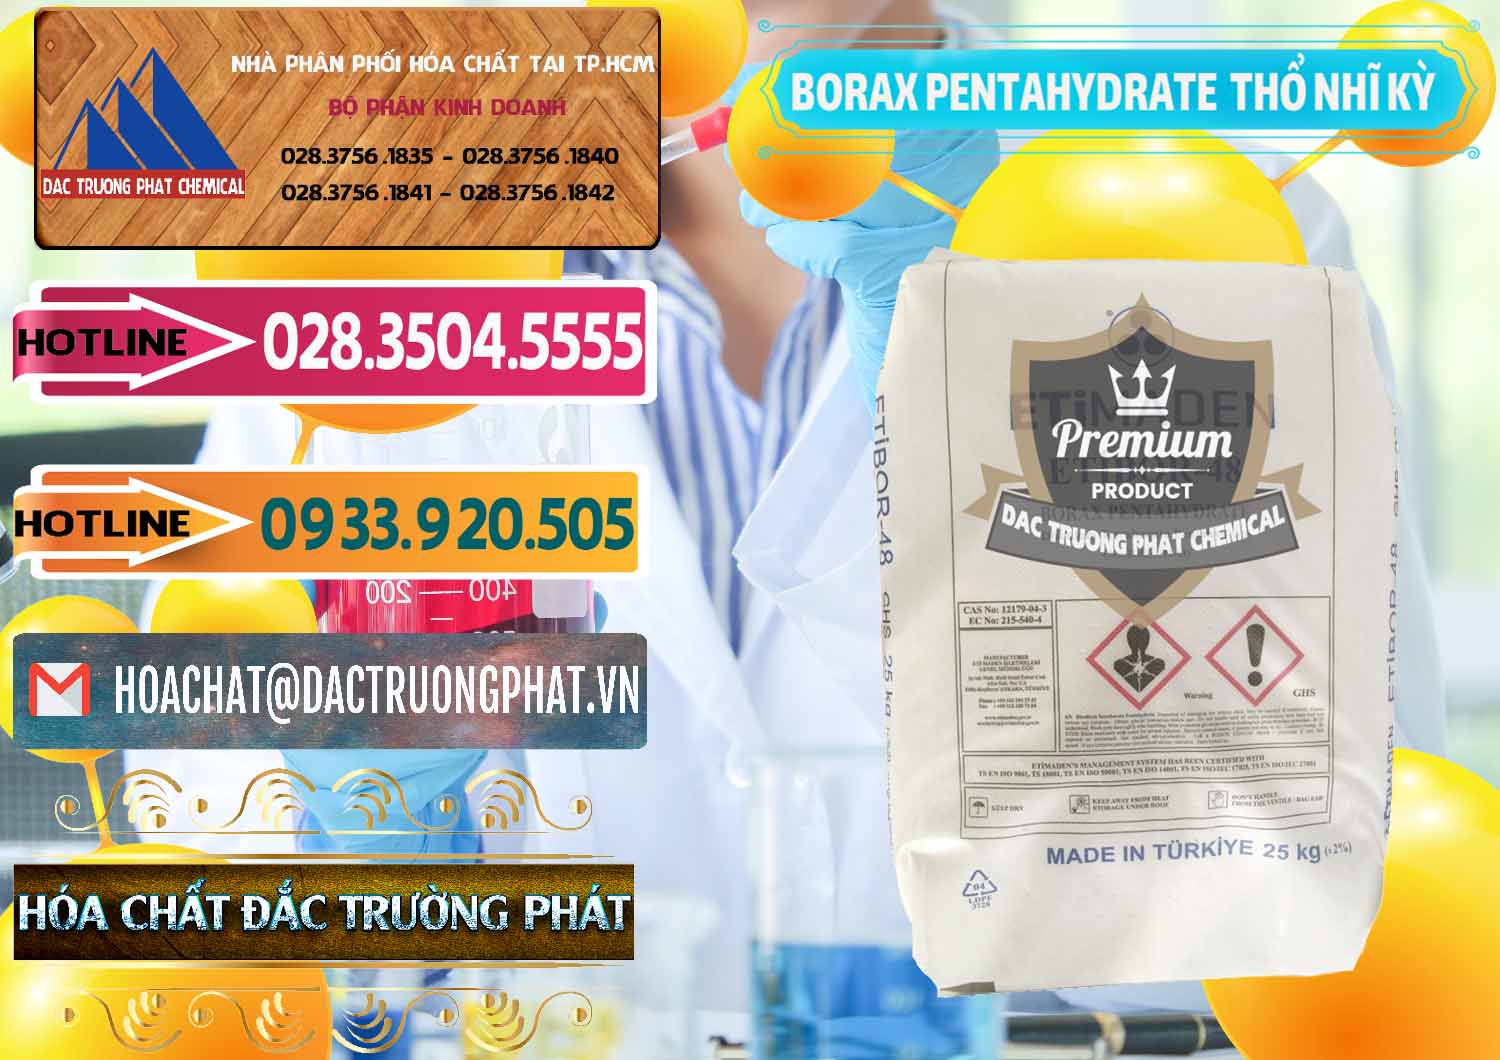 Đơn vị bán và cung ứng Borax Pentahydrate Thổ Nhĩ Kỳ Turkey - 0431 - Cty kinh doanh và phân phối hóa chất tại TP.HCM - dactruongphat.vn